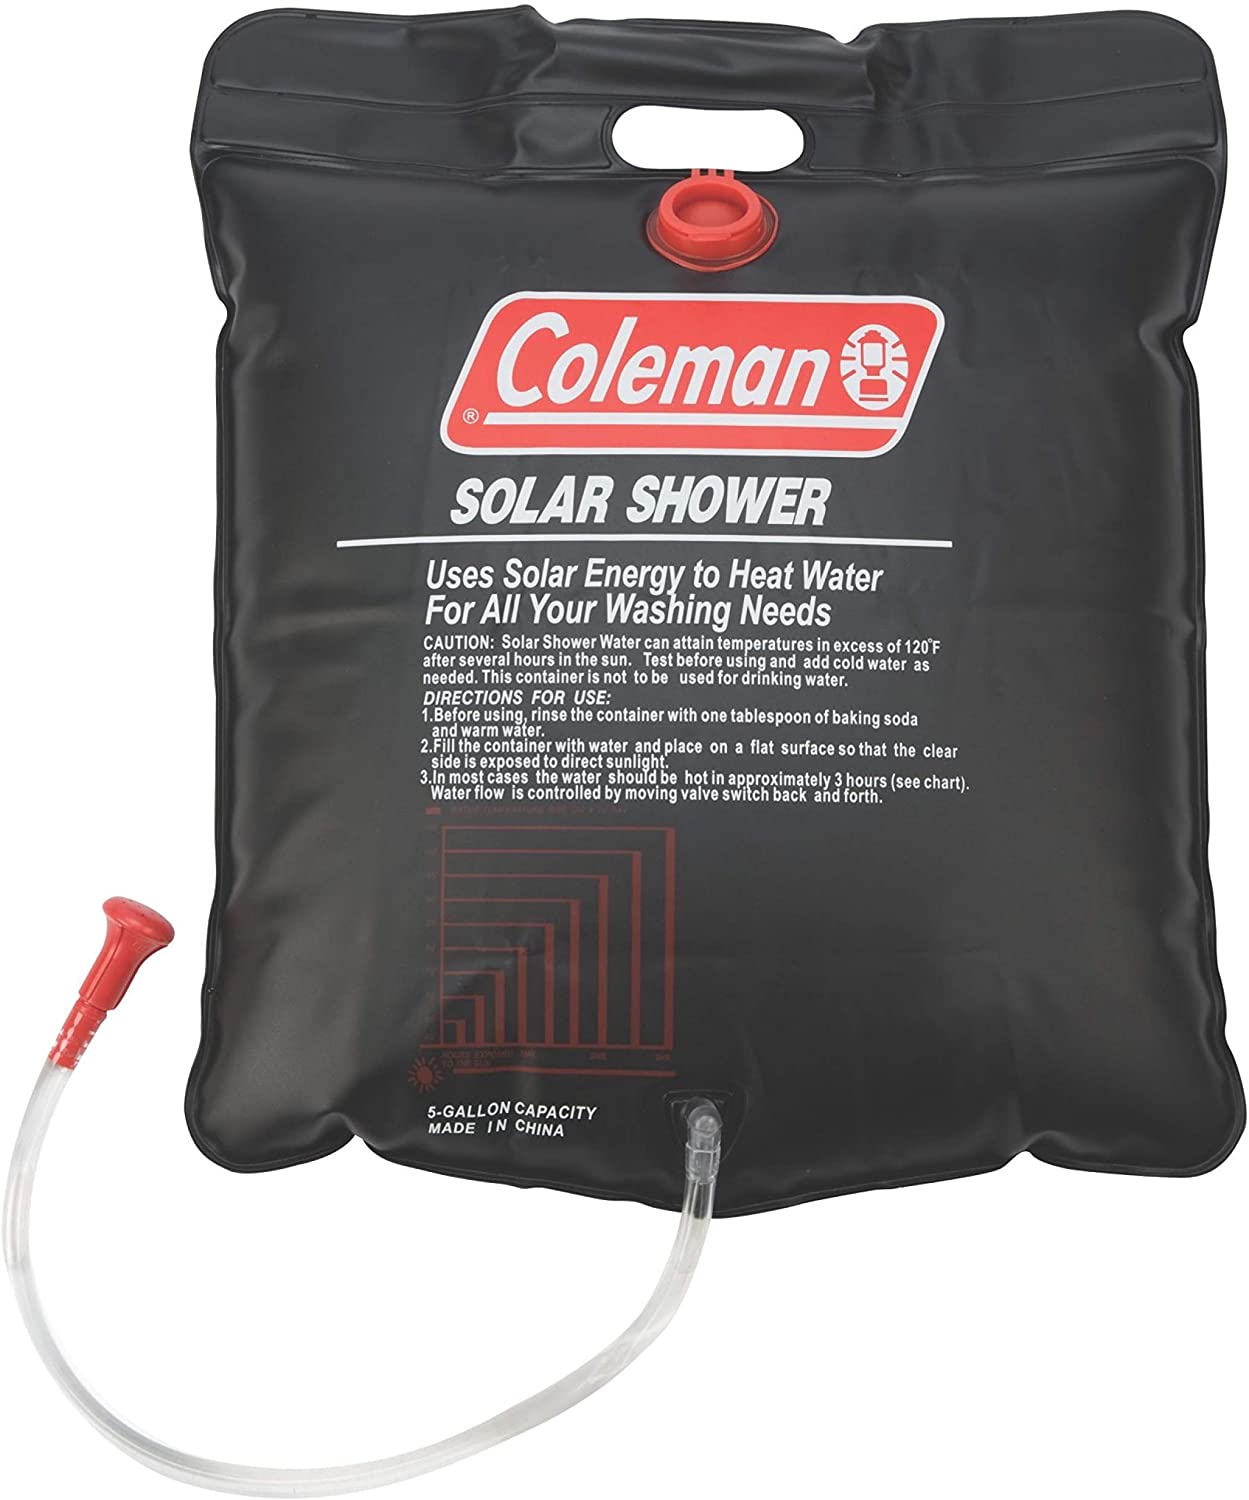 Coleman-5-Gallon